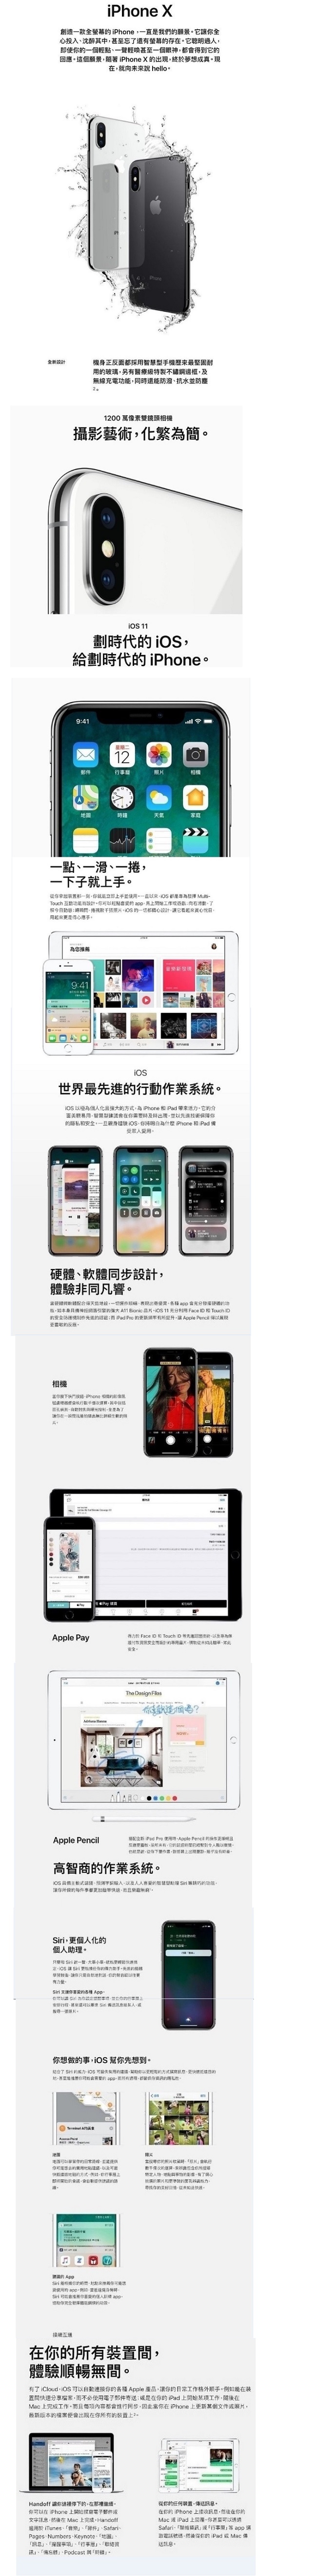 【福利品】Apple iPhone X 256GB 智慧型手機 (九成新)